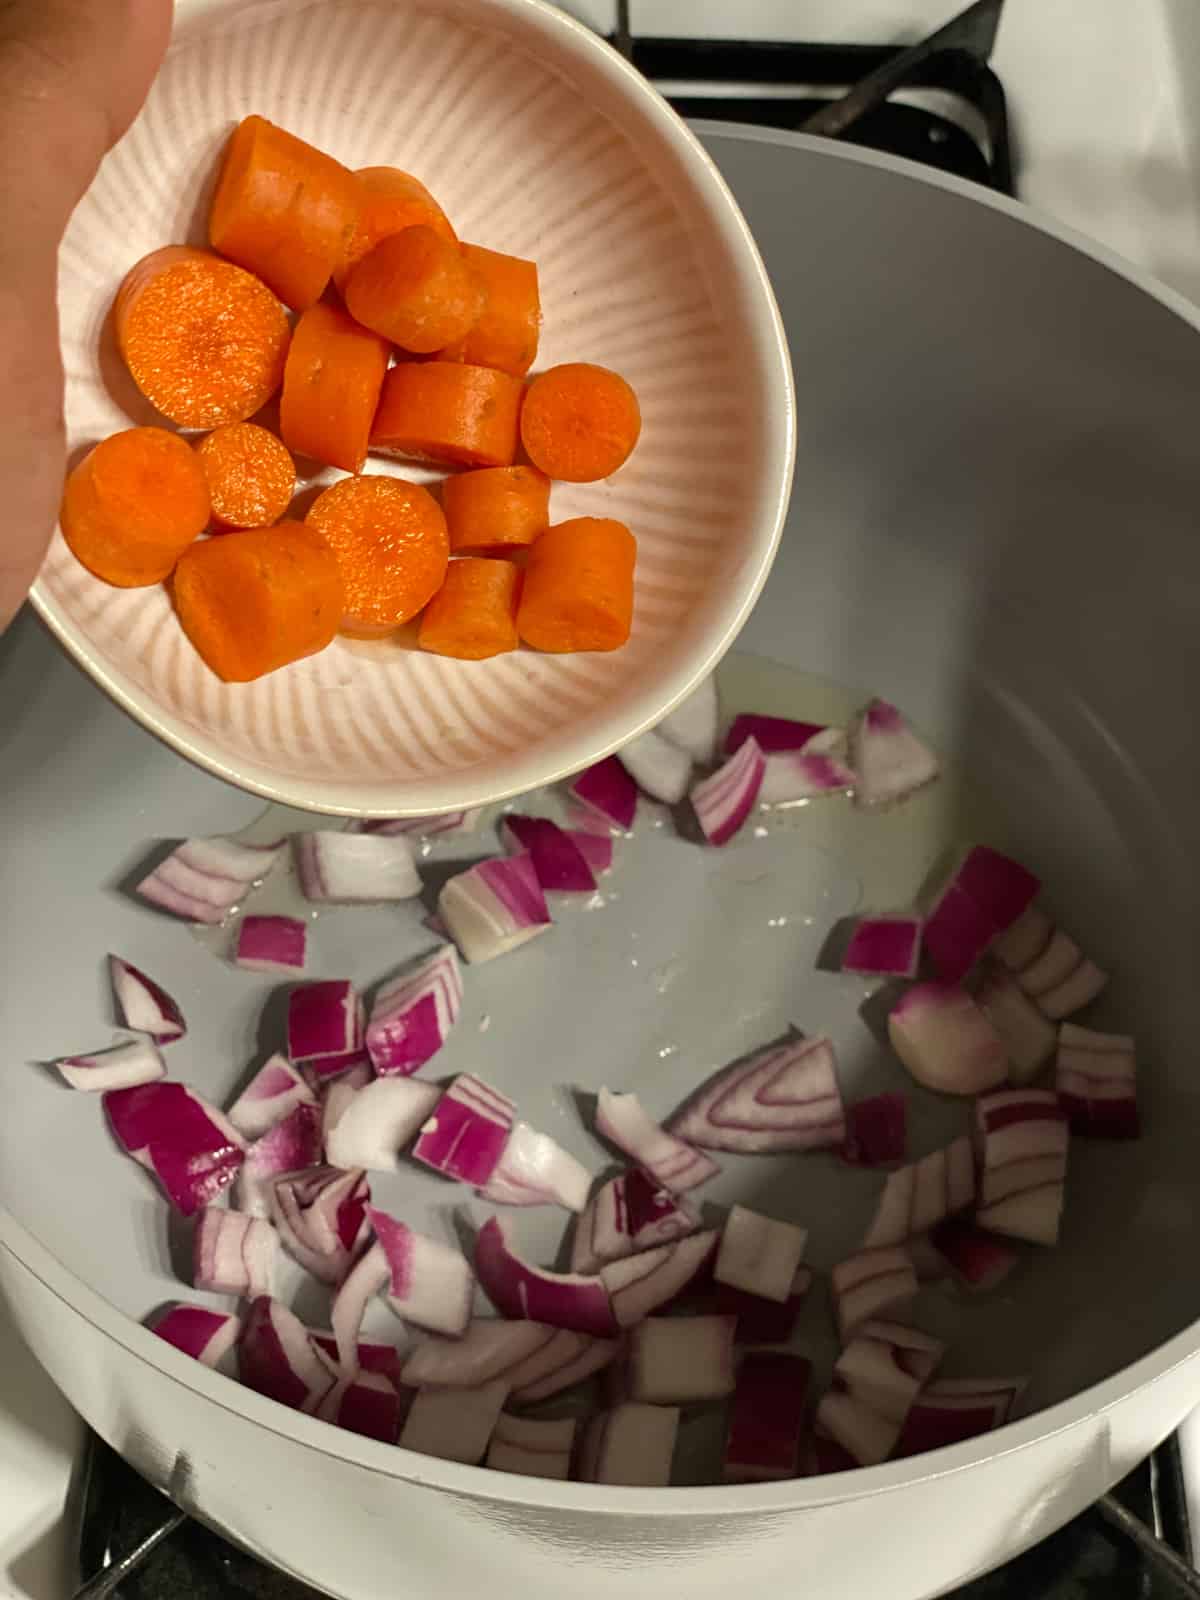 فرآیند اضافه ، هویج به ماهیتابه